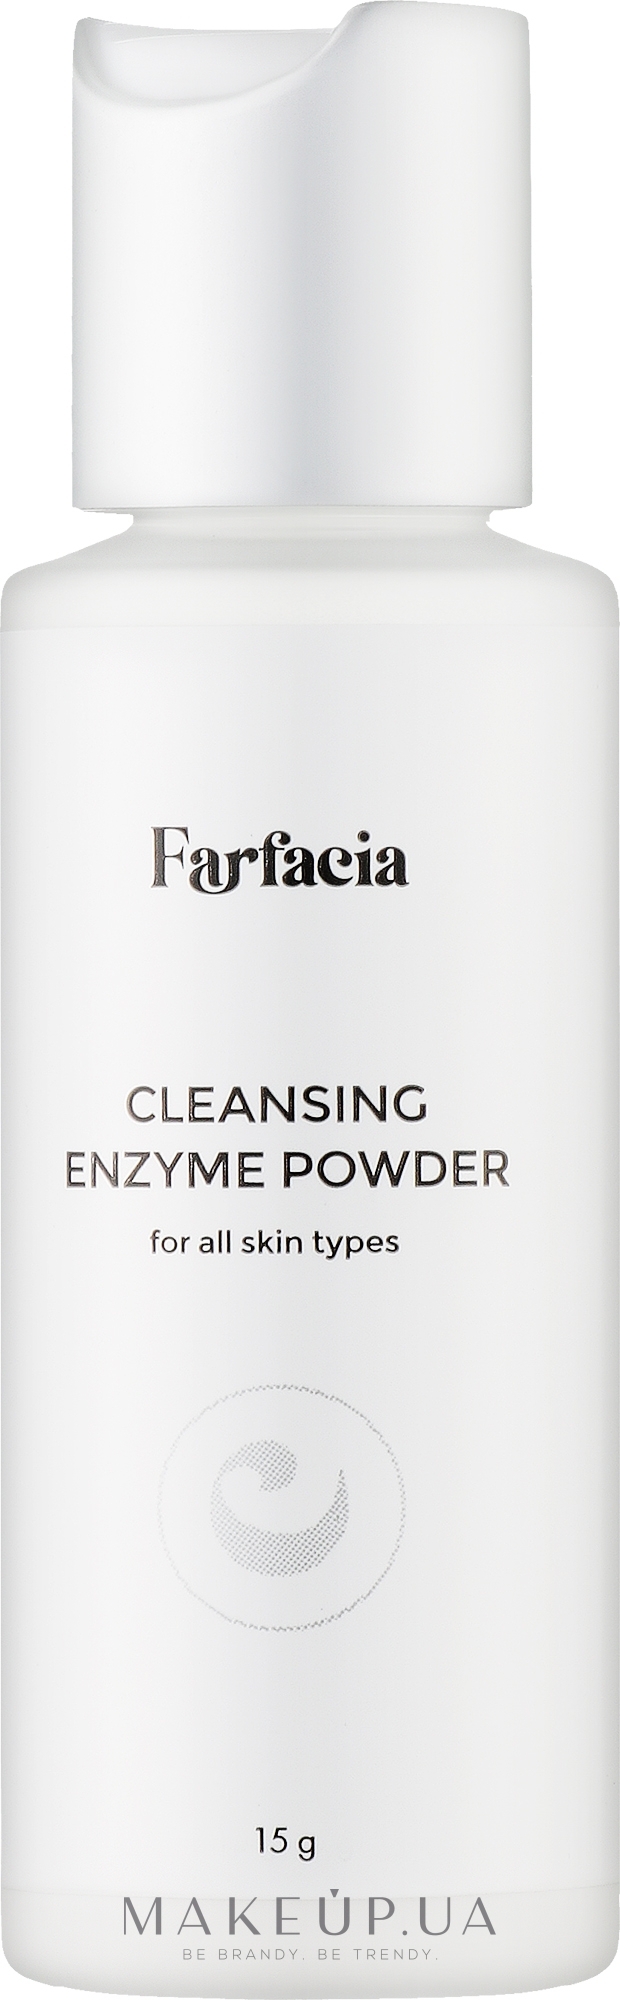 Ензимна пудра для всіх типів шкіри - Farfacia Cleansing Enzyme Powder — фото 15g